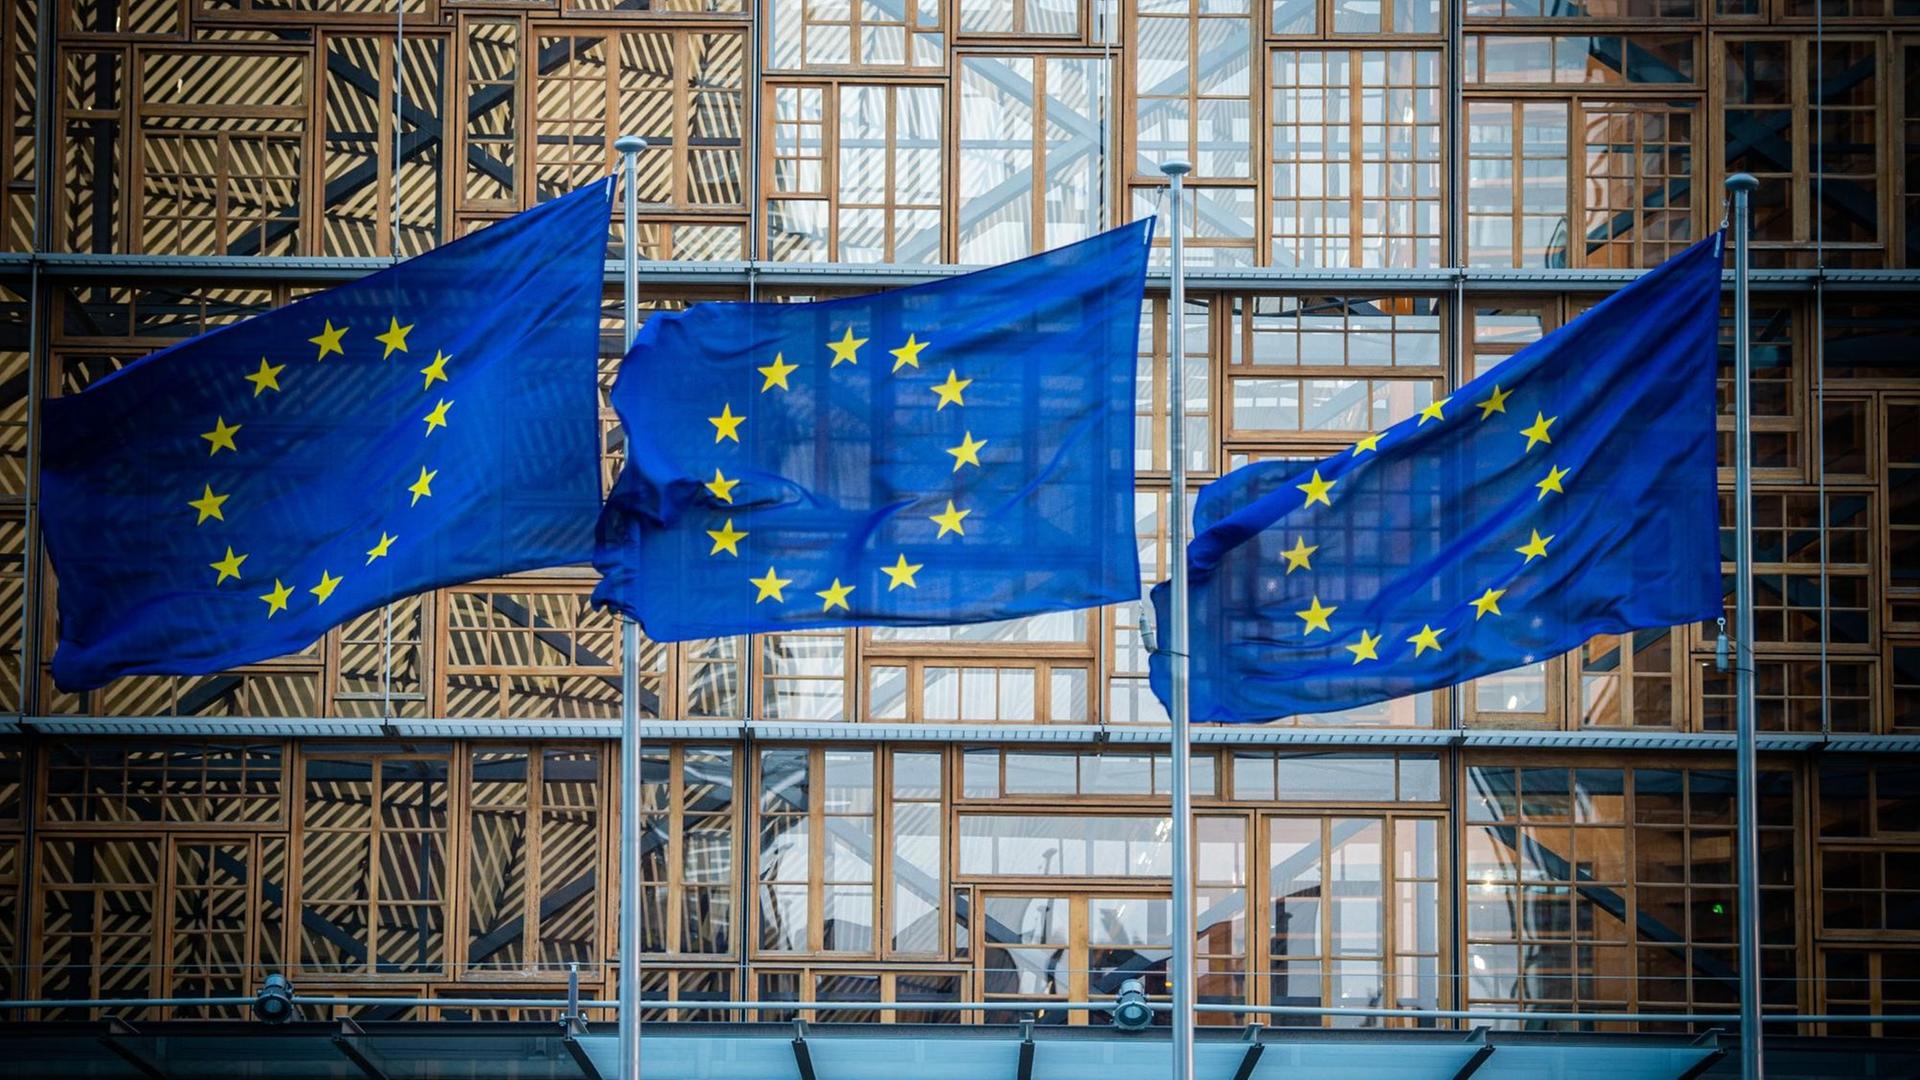 Flaggen der Europäischen Union wehen im Wind vor dem Europa-Gebäude in Brüssel.